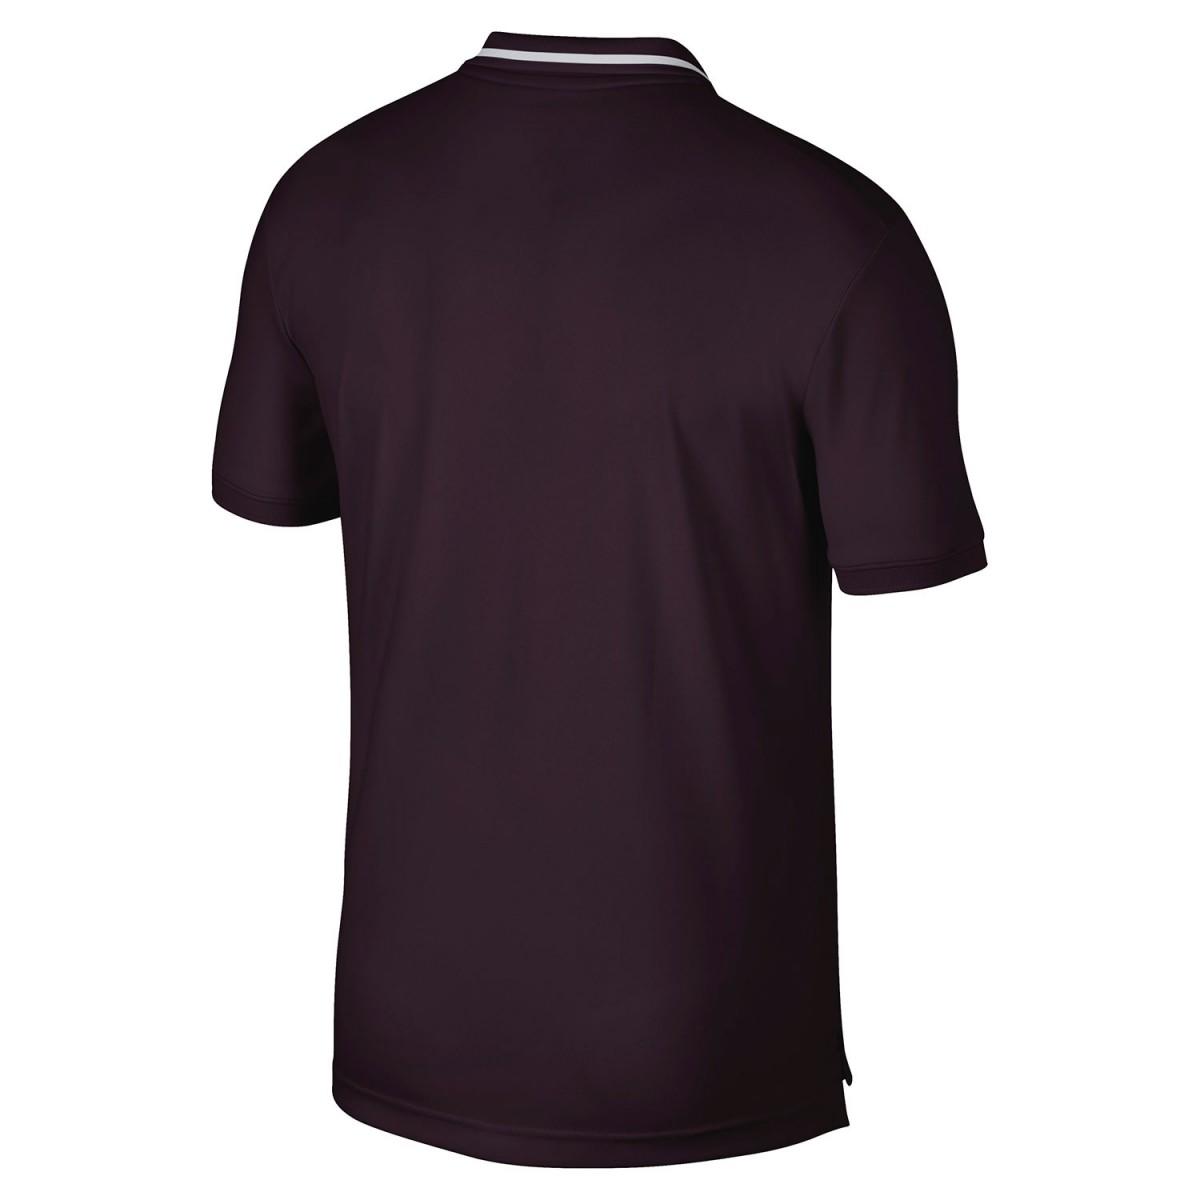 Теннисная футболка мужская Nike Court Dry Pique Polo burgundy ash